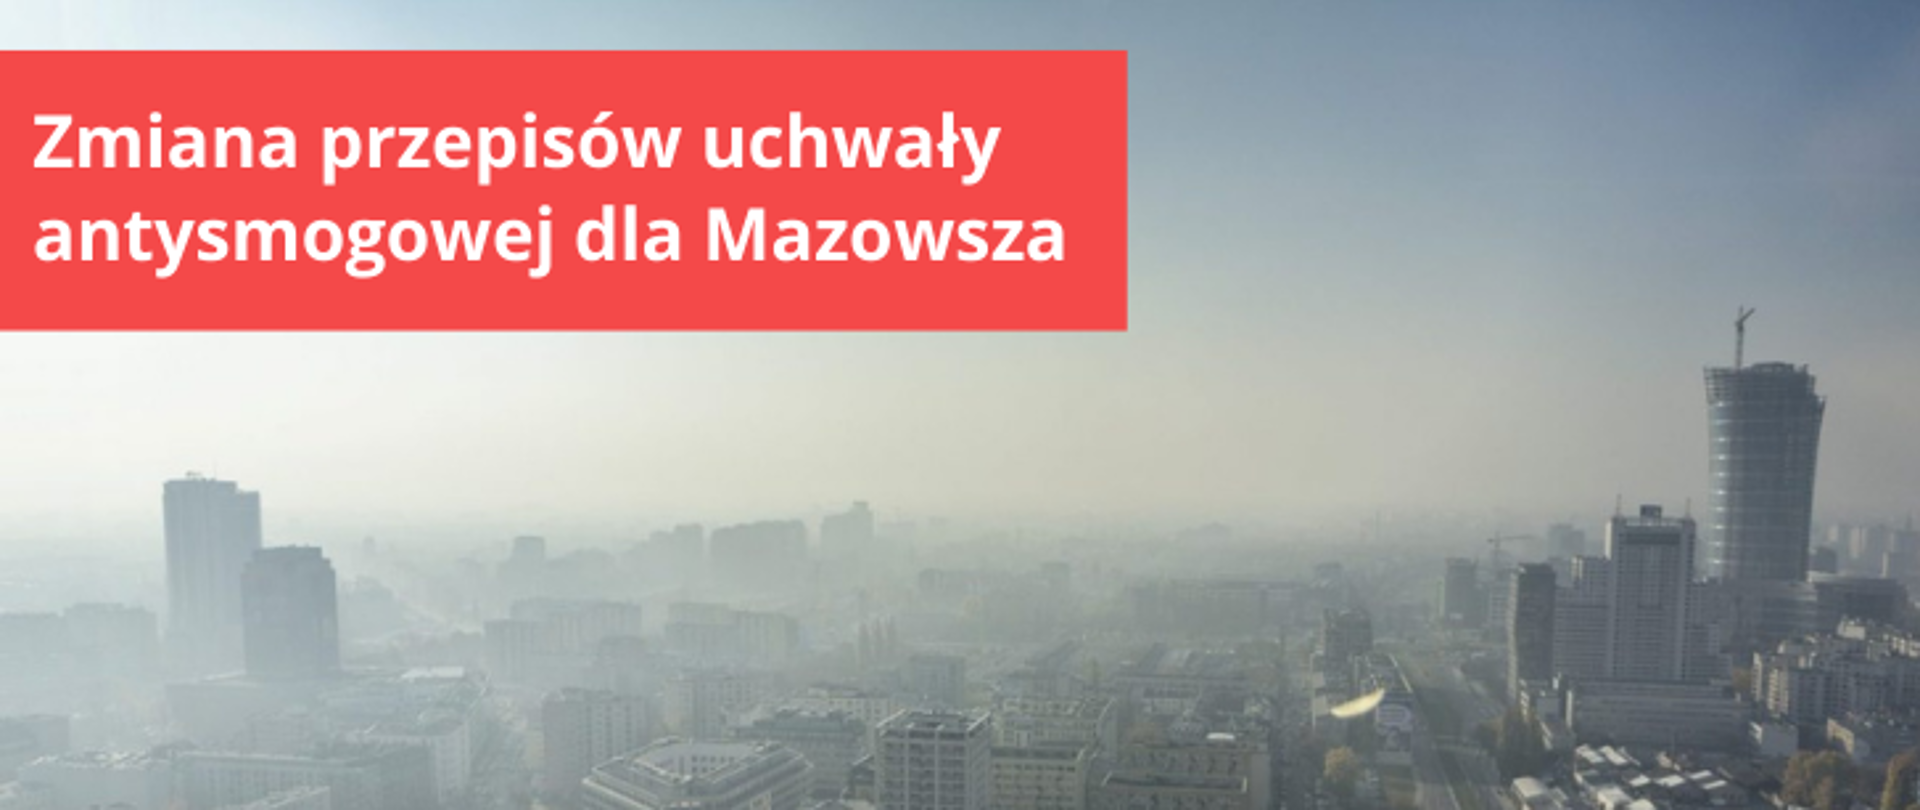 Zdjęcie informujące o zmianie przepisów uchwały antysmogowej dla Mazowsza. Grafika przedstawia panoramę Warszawy, nad którą unosi się smog. W lewym górnym rogu na czerwonym tle biały napis o treści: "Zmiana przepisów uchwały antysmogowej dla Mazowsza".